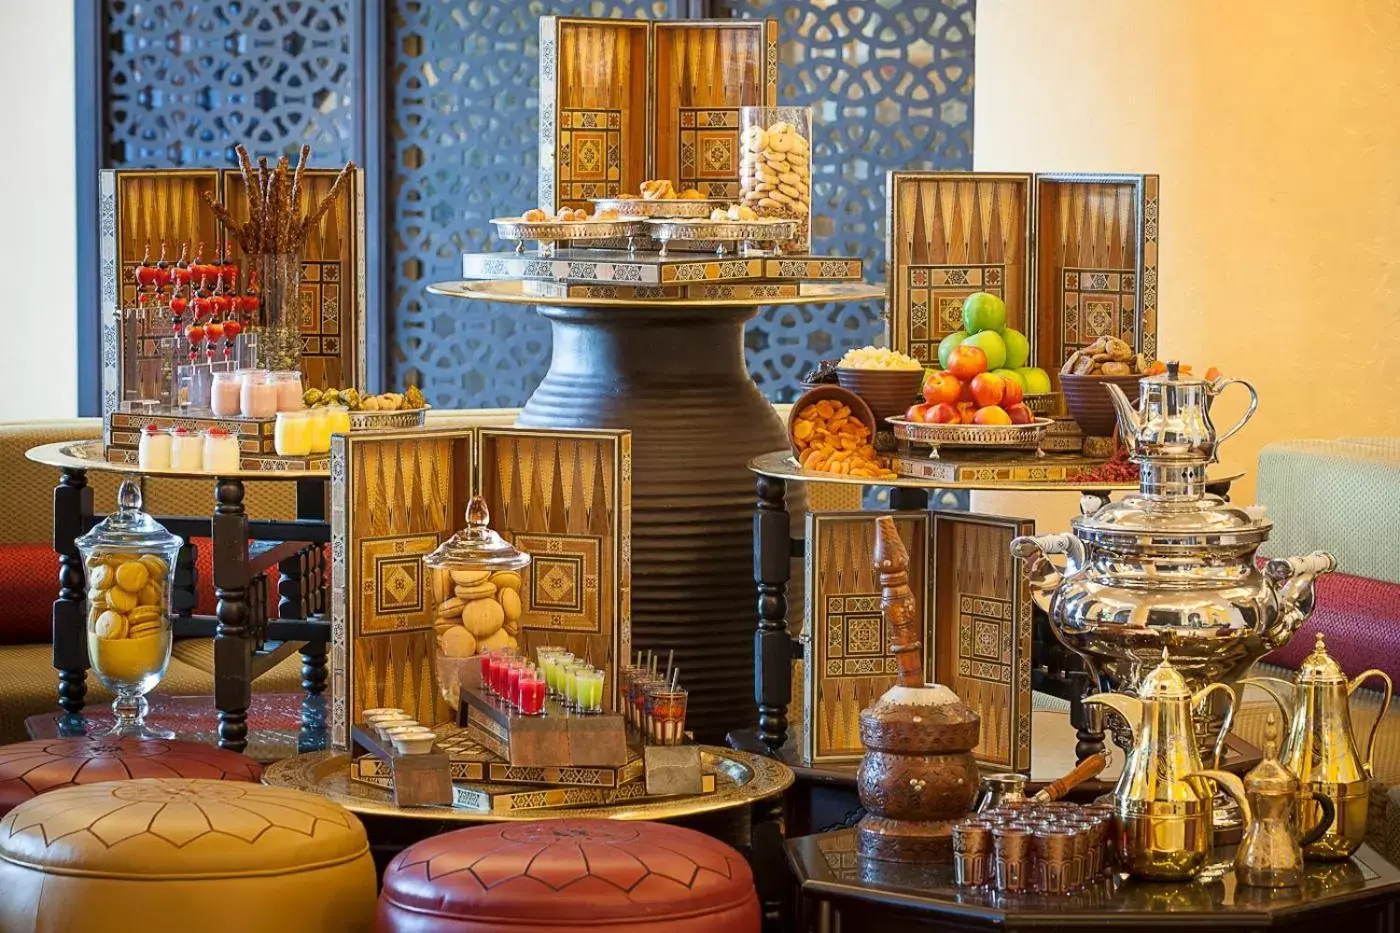 Restaurant/places to eat in Oaks Ibn Battuta Gate Dubai